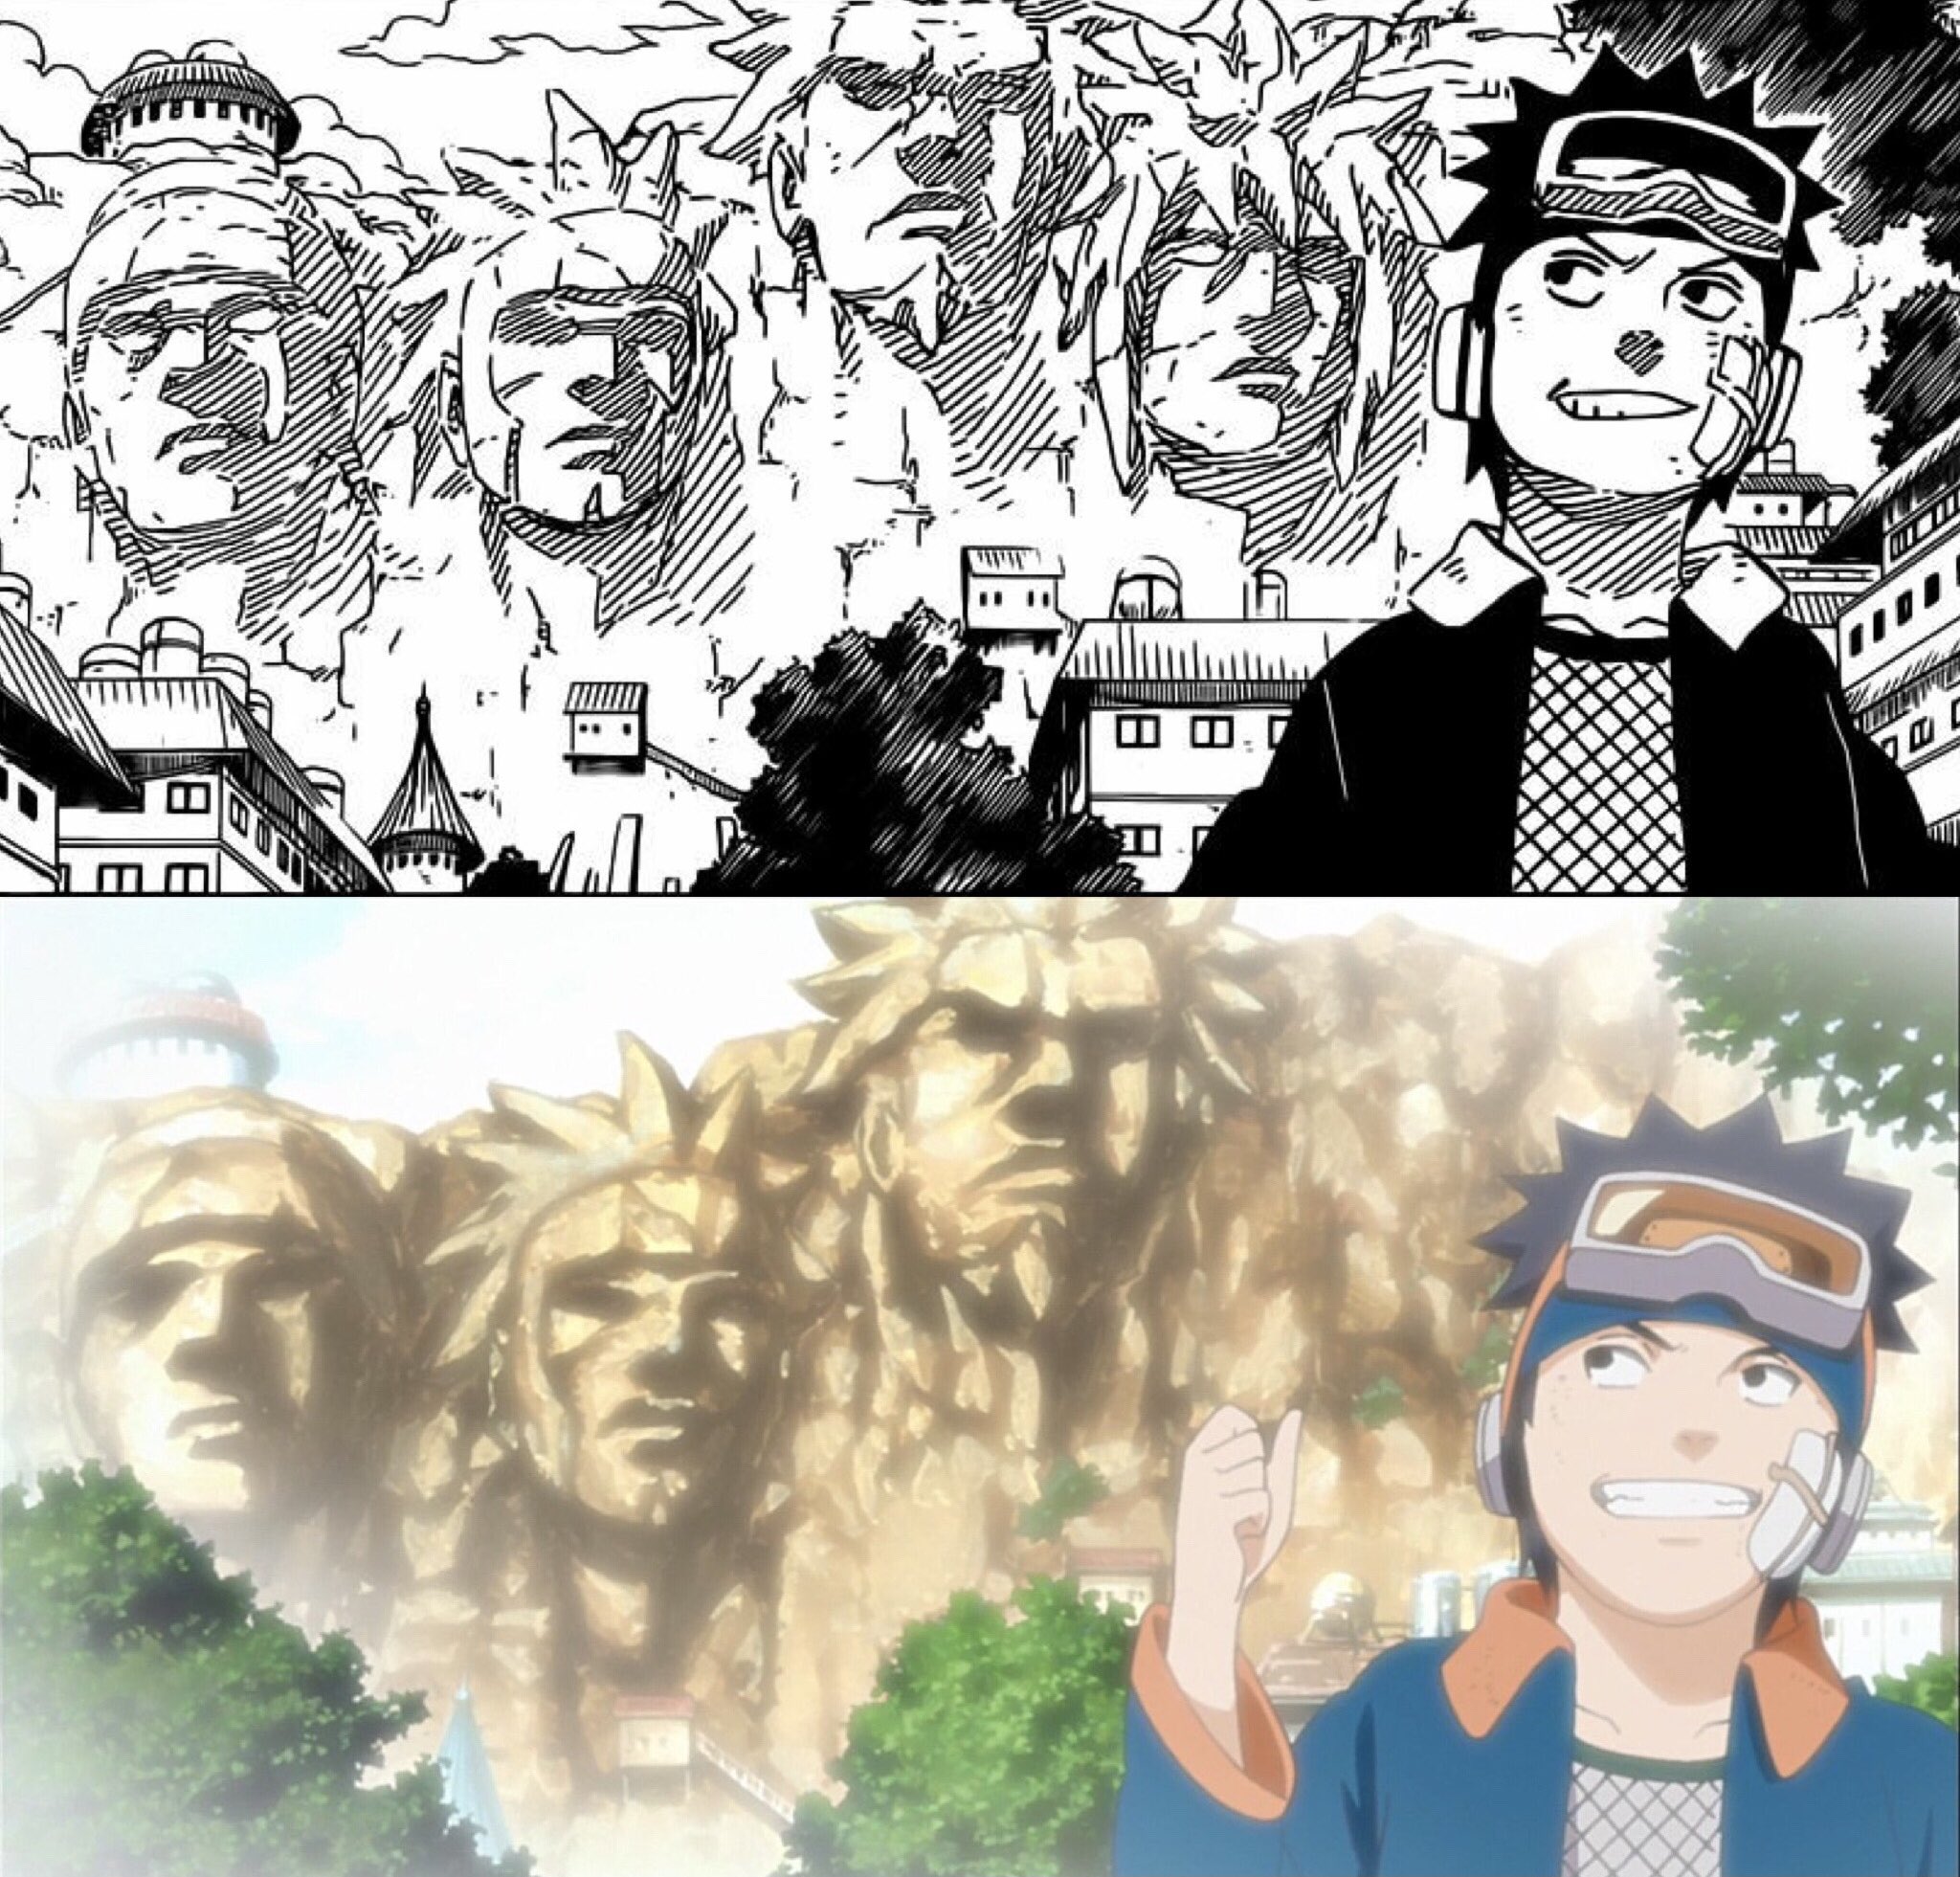 Se o Naruto virou Hokage foi graças ao Minato e o Tobirama que criaram os  únicos dois jutsus que ele usou no anime inteiro - iFunny Brazil